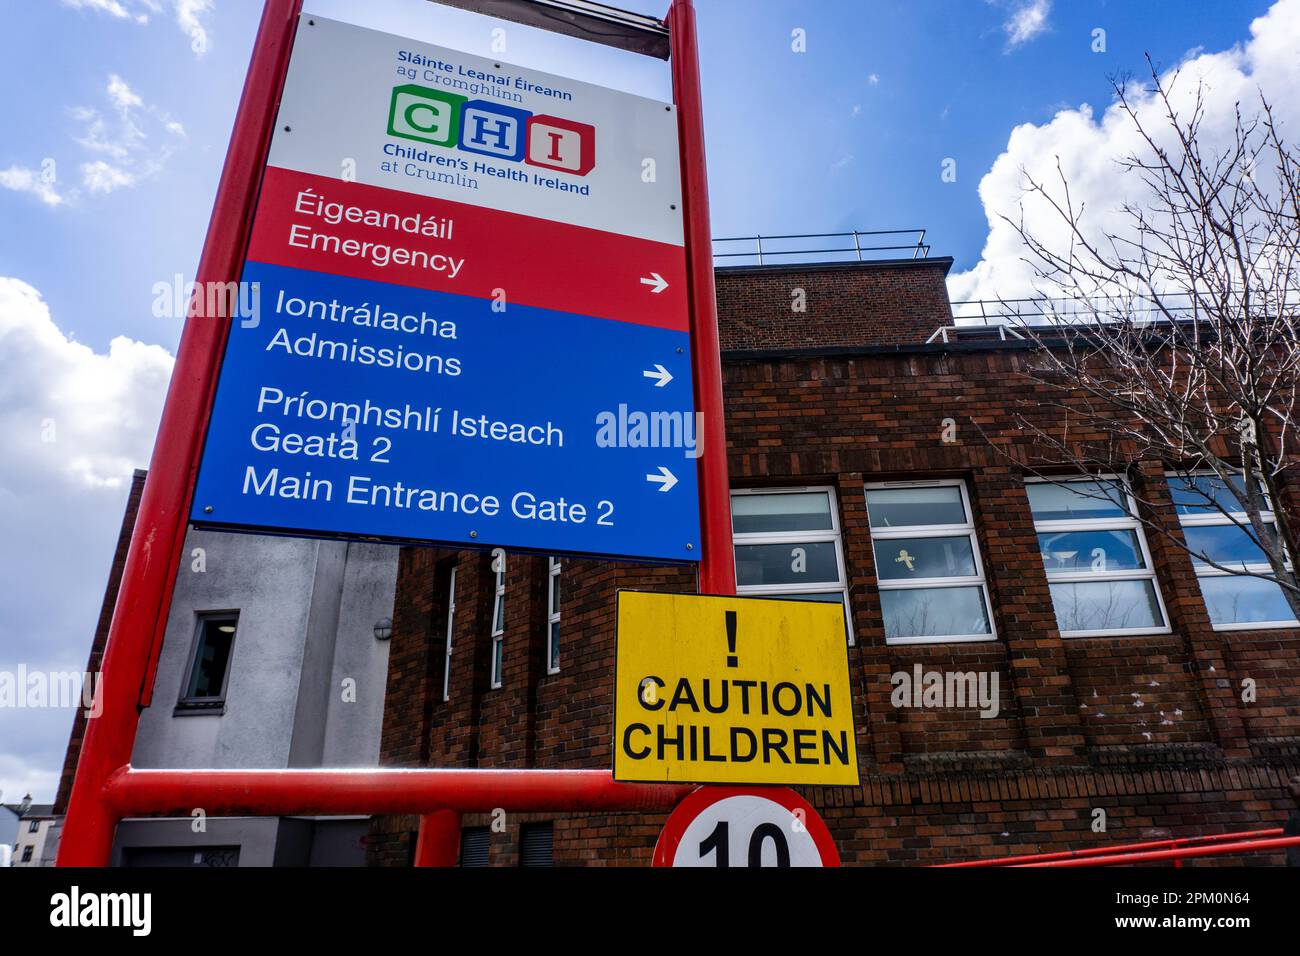 Crumlin Children's Hospital, Teil der Children Health Ireland Gruppe, ist ein akutes Kinderkrankenhaus. Stockfoto